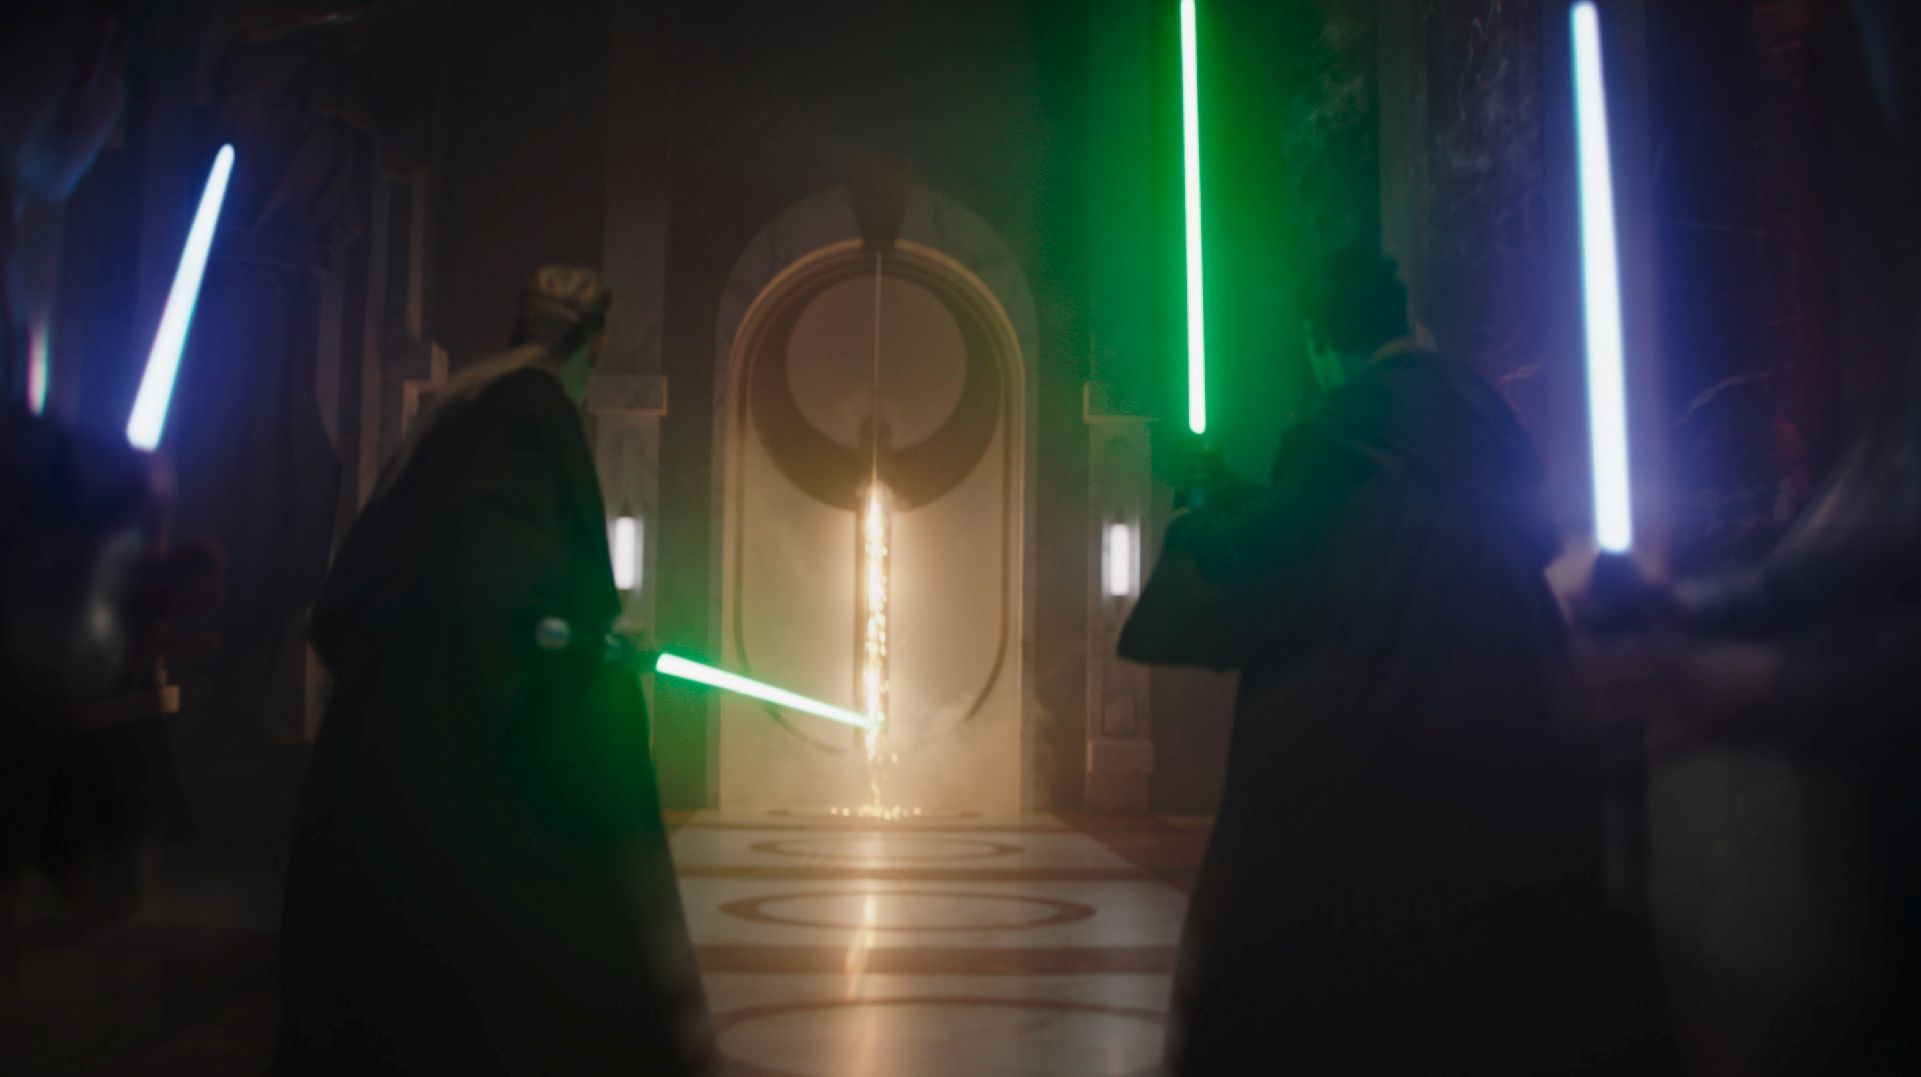 La próxima película de “Star Wars” podría ser revelada en el Star Wars Celebration